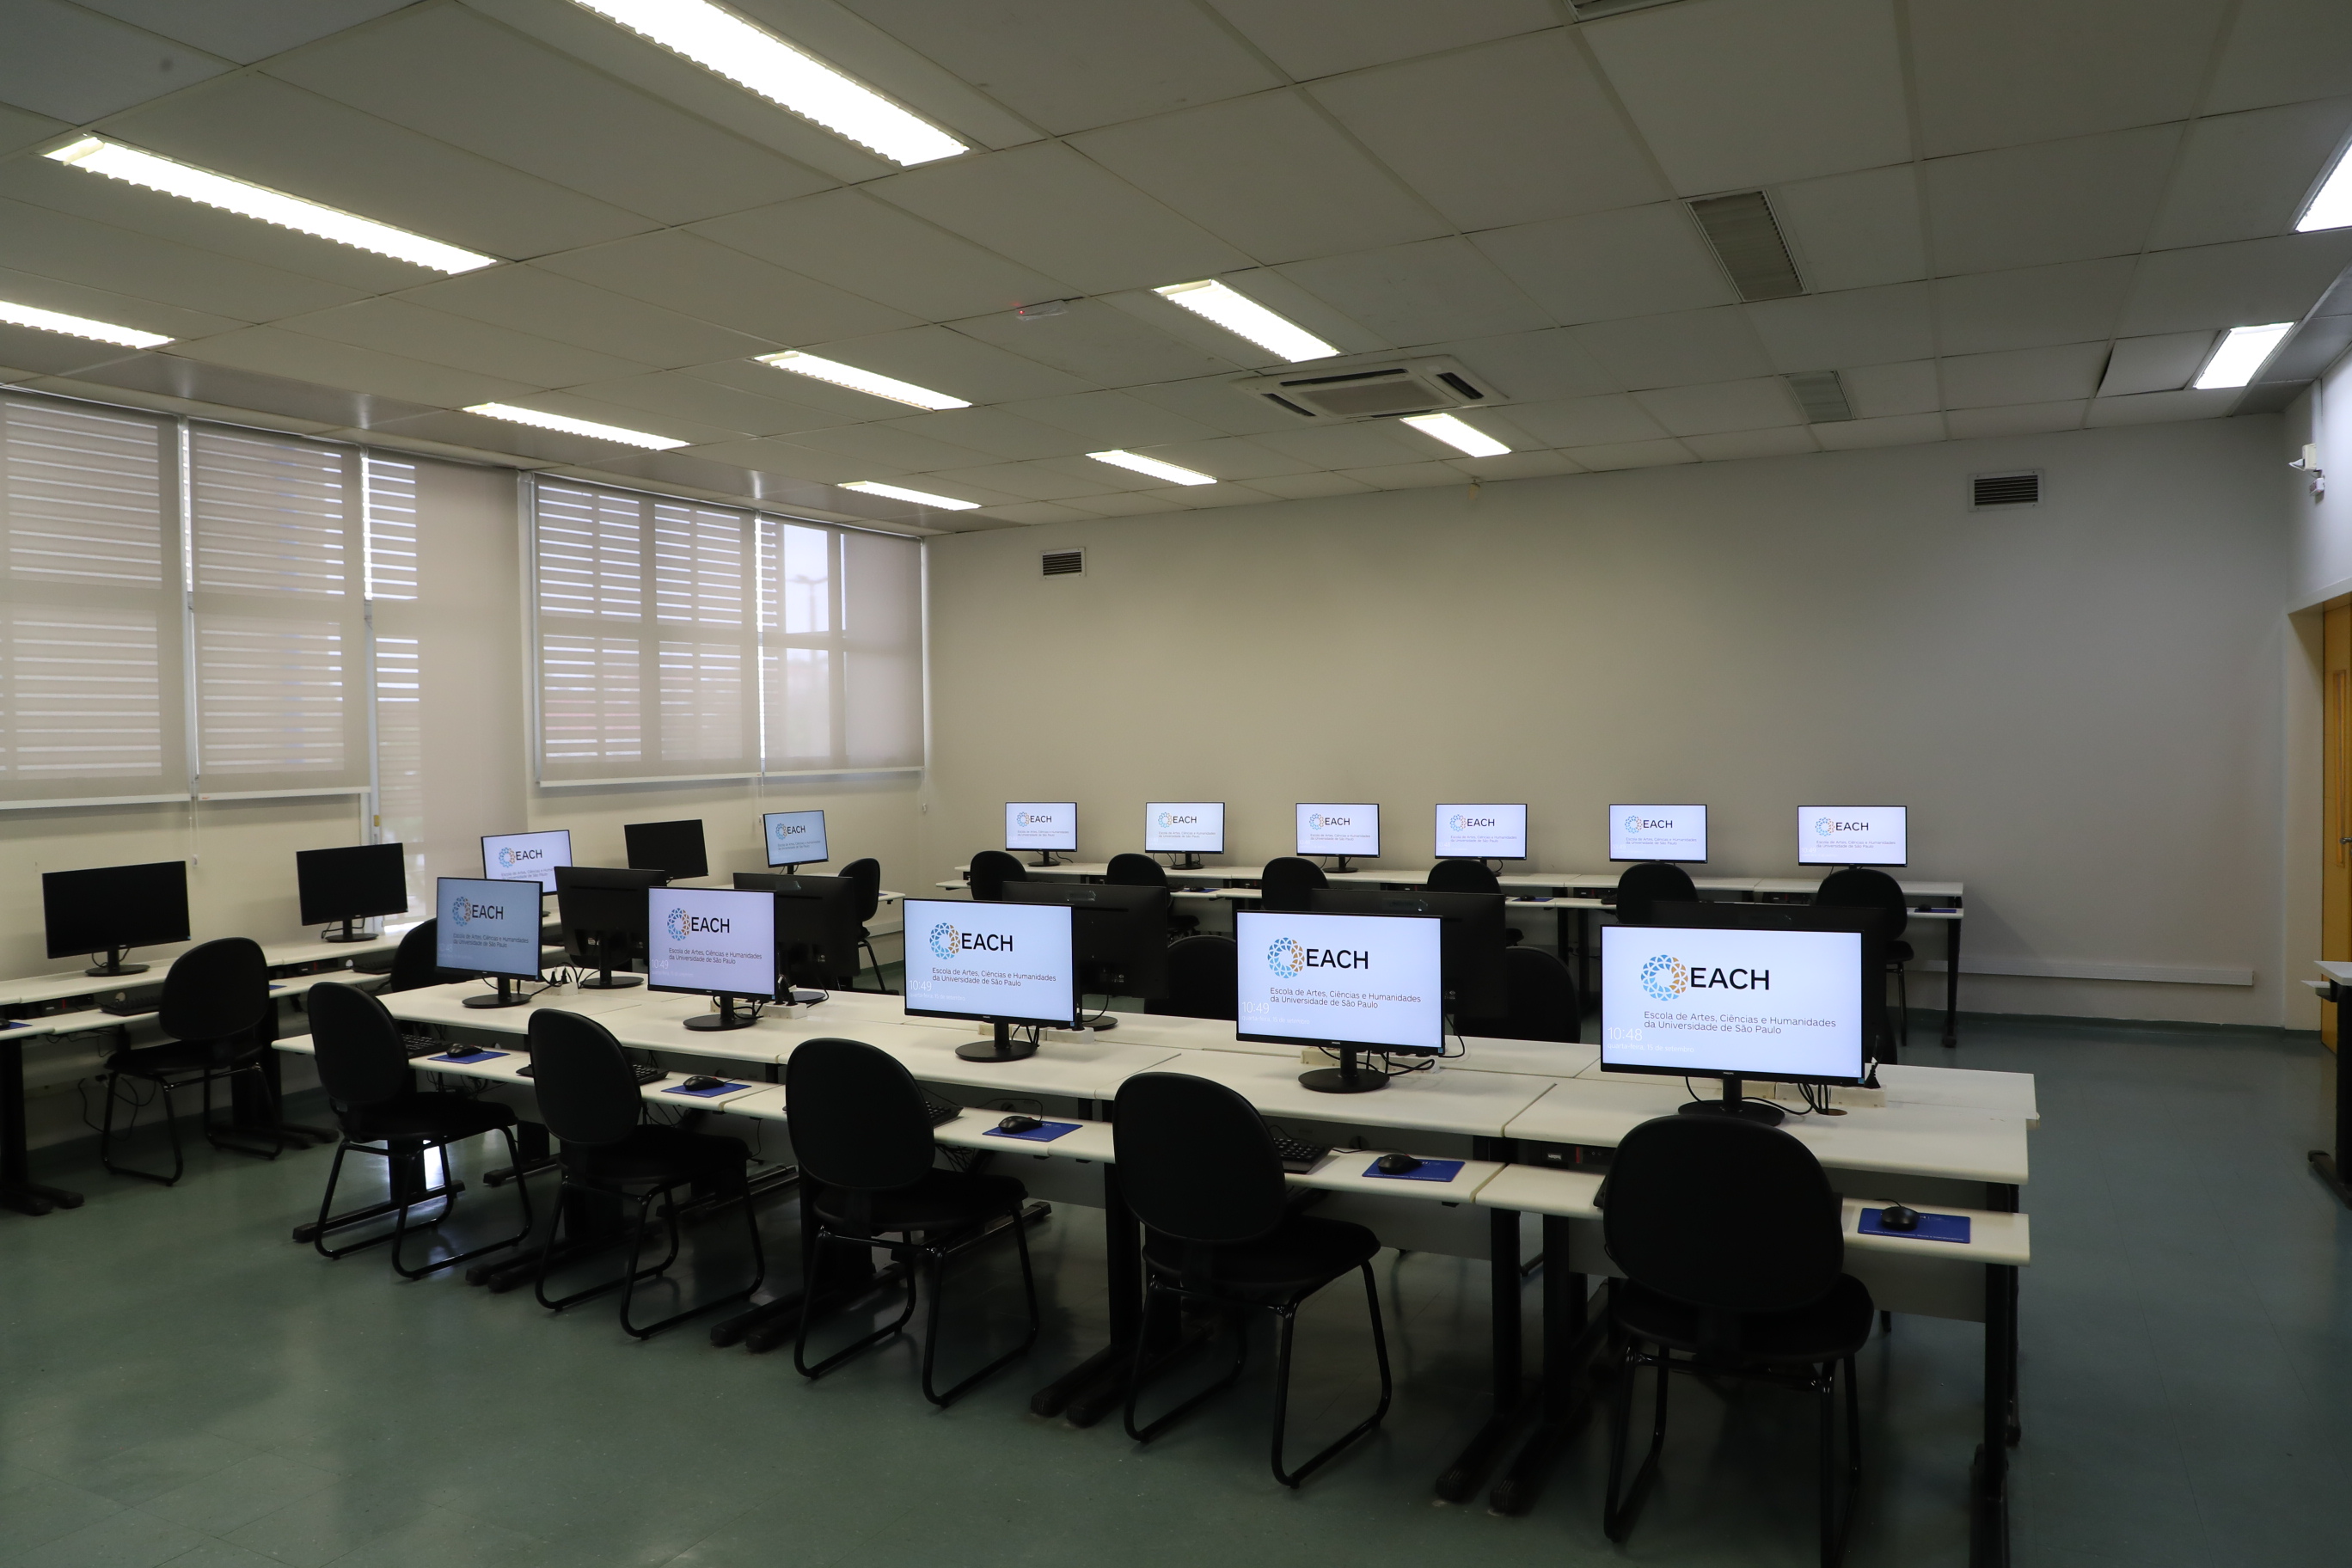 sala de aula vazia com computadores pretos